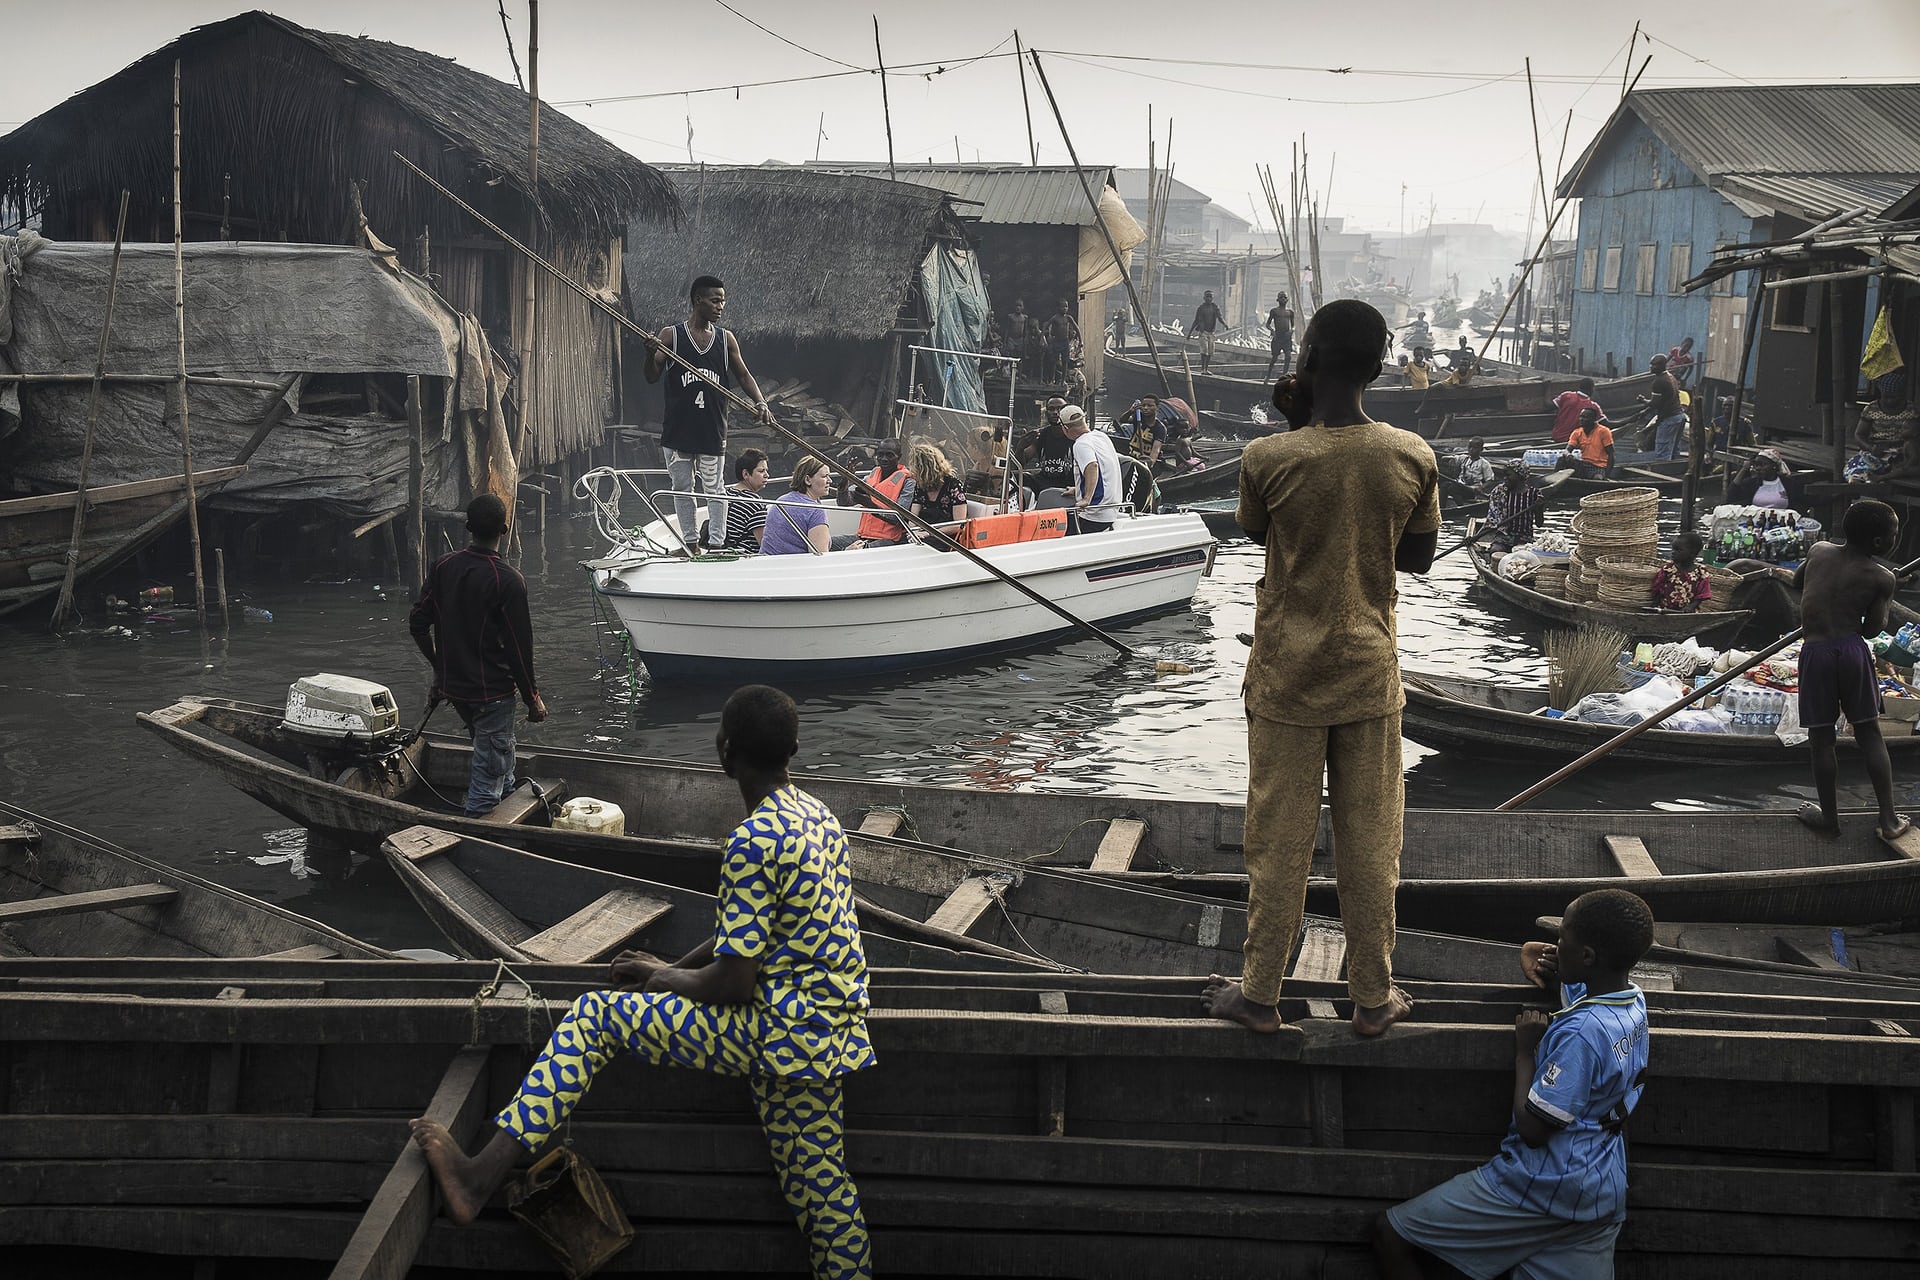 Giải nhất hạng mục Đương đại không kèm câu chuyện. Một chiếc thuyền chở du khách đi từ bến tàu Lagos qua những con sông nhỏ ở khu Makoko của Nigeria, nơi này trước đây là một làng chài nhỏ đã được chính phủ đầu tư phát triển và trở thành một khu du lịch lớn bên bờ hồ Lagos. Ảnh: Jesco Denzel/Handout/EPA.